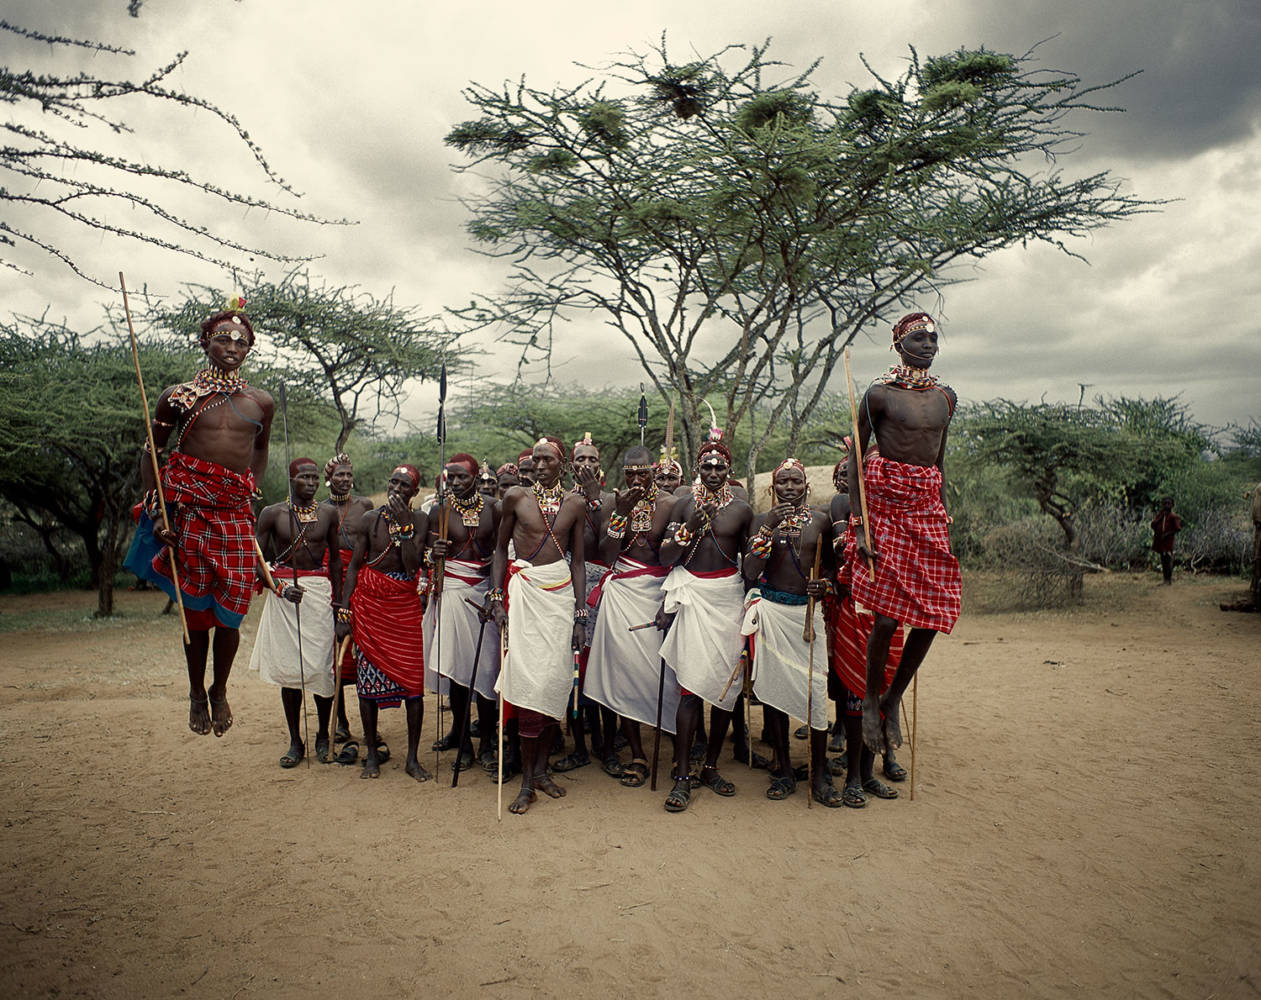 revistaprosaversoearte.com - As tribos isoladas da África na fotografia de Jimmy Nelson